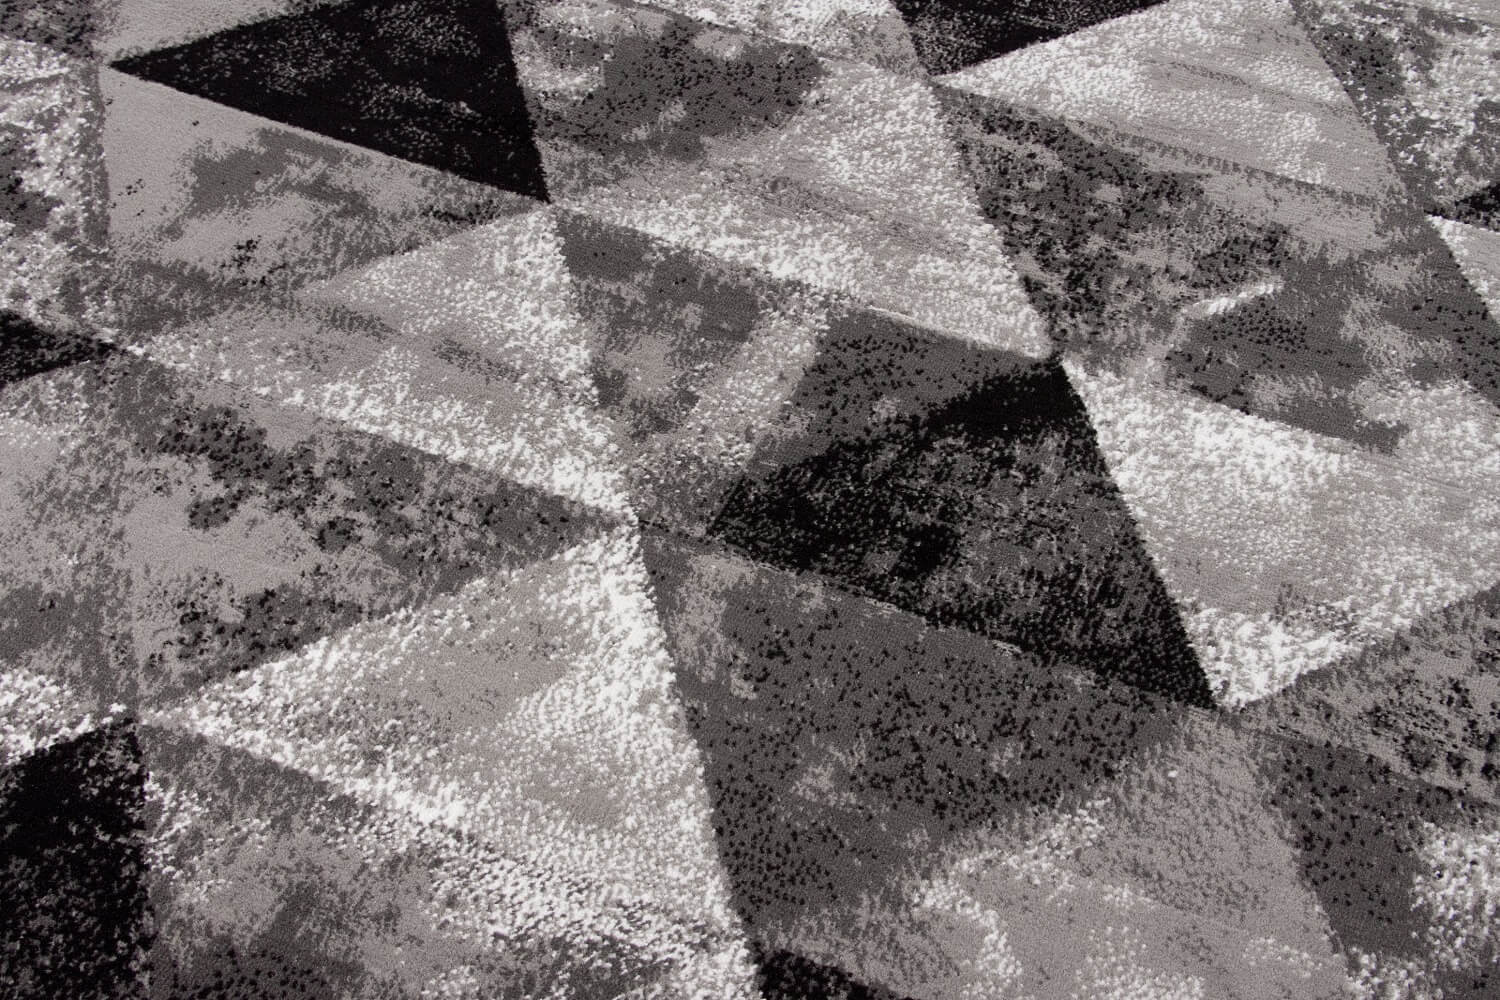 Mládežnícky koberec ALMAS 03 so šedými a čiernymi trojuholníkmi s jemnou kamuflážou tón v tóne, moderný, trendový - Carpetforyou obrázok 4